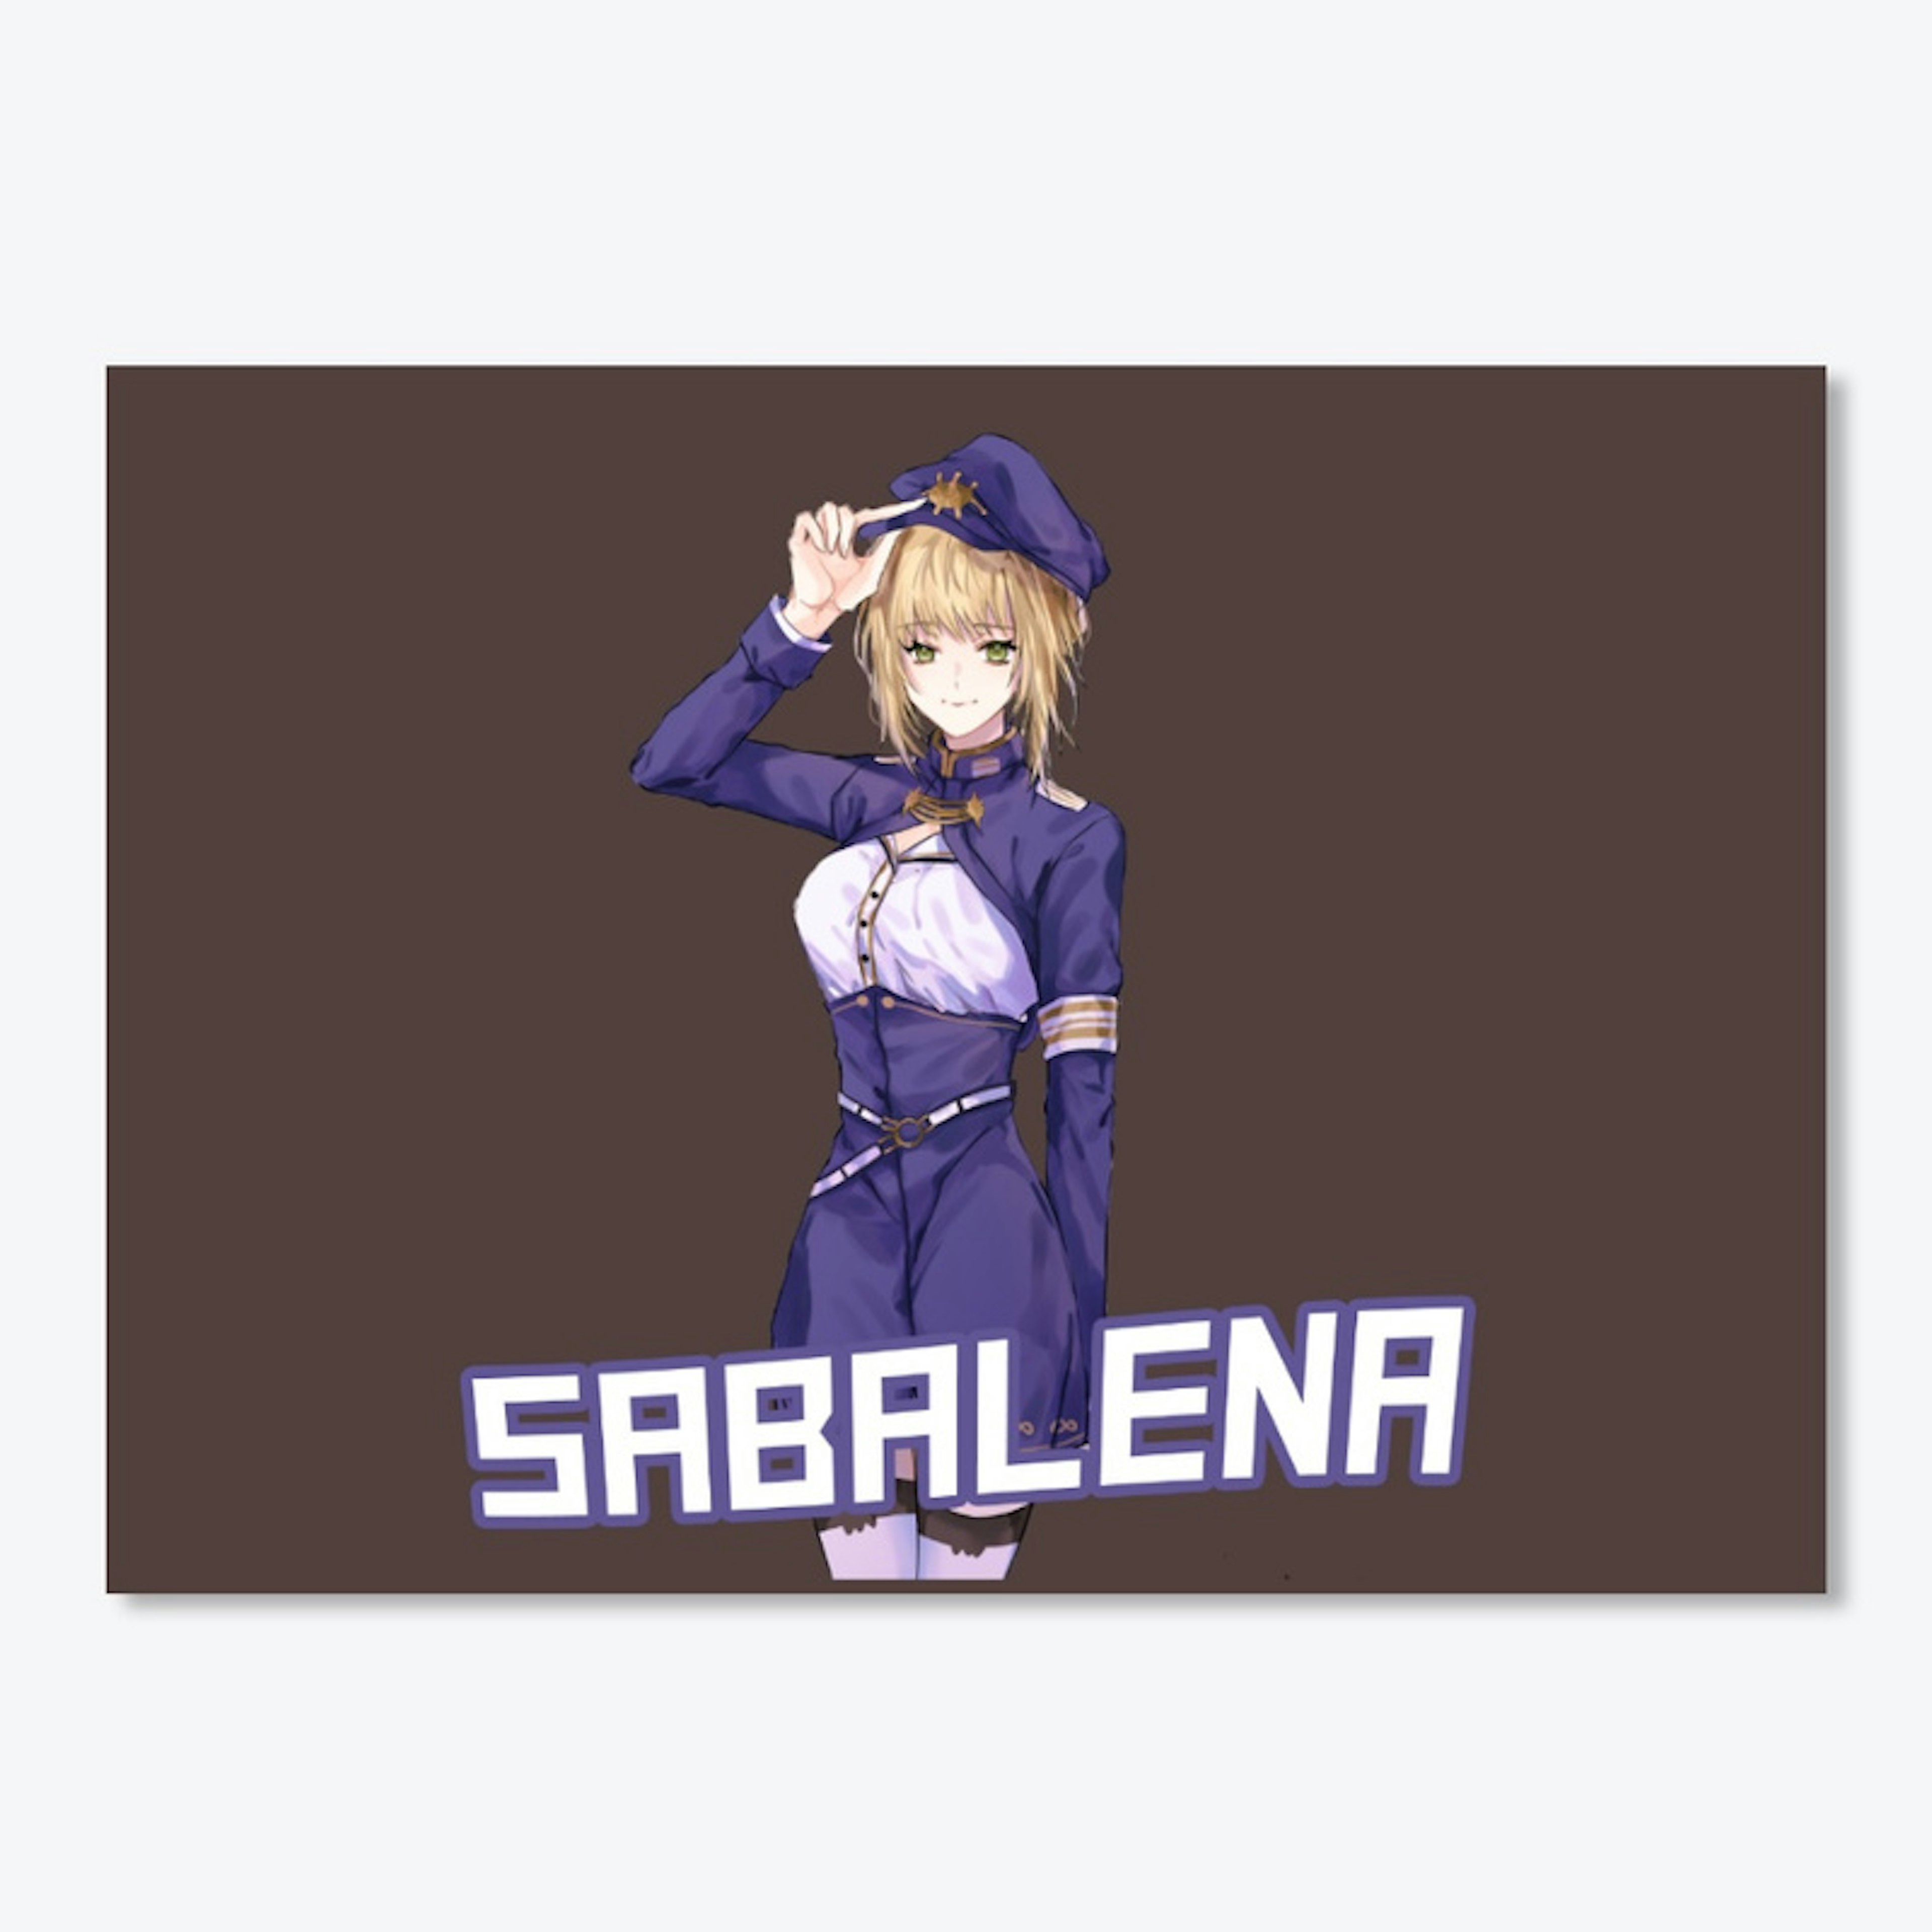 Sabalena